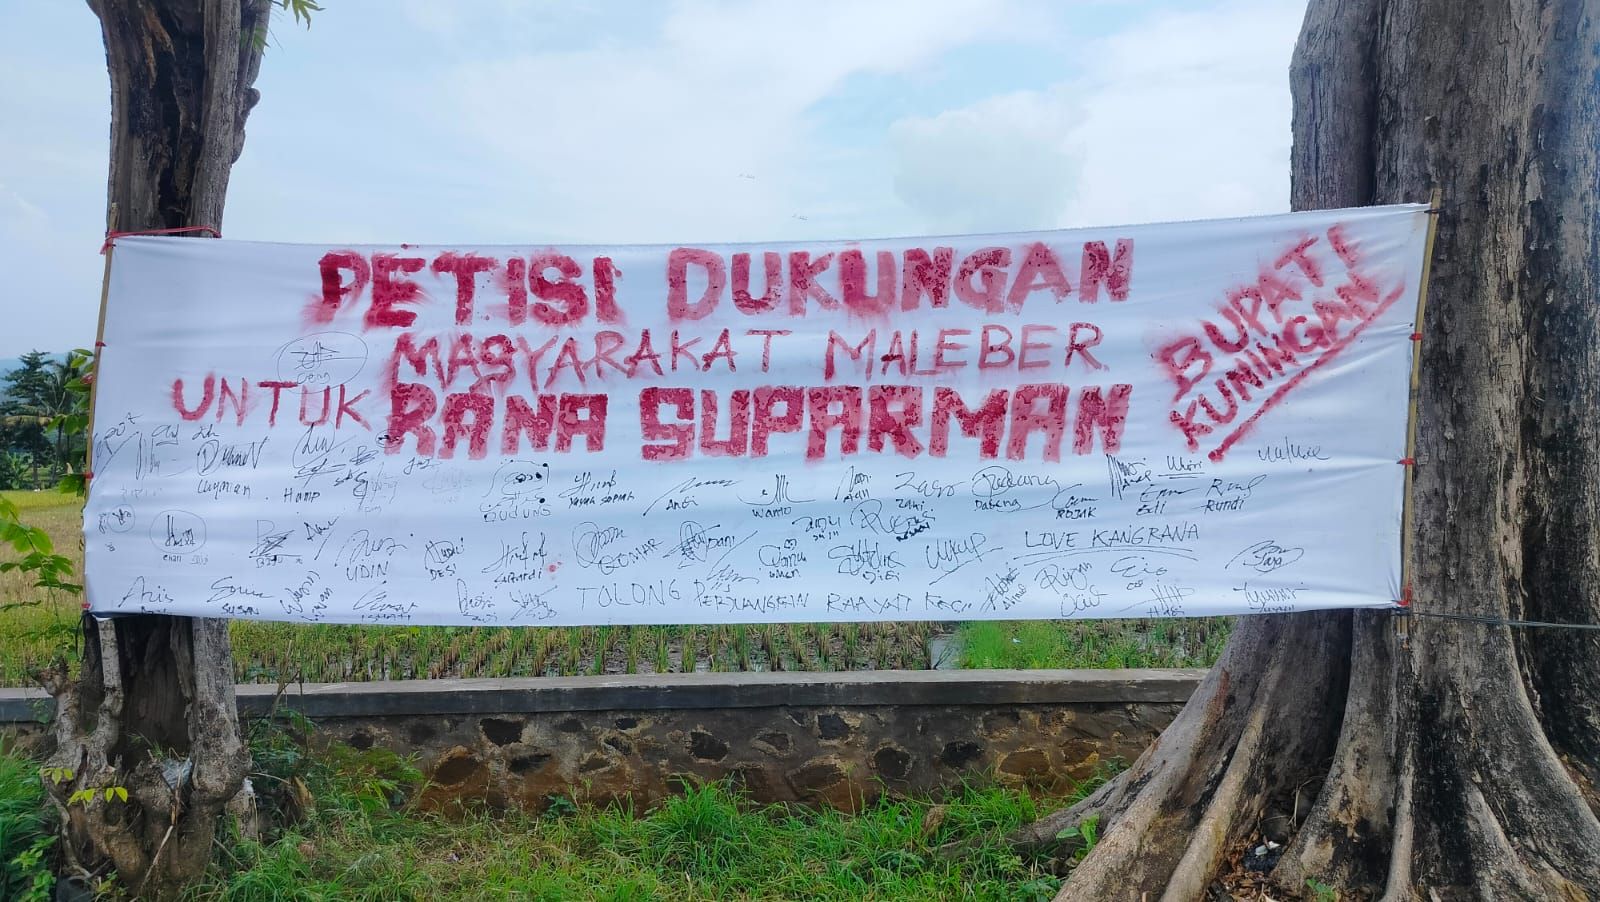 Petisi Dukungan Masyarakat Maleber untuk Rana Suparman di Pilbup Kuningan.*